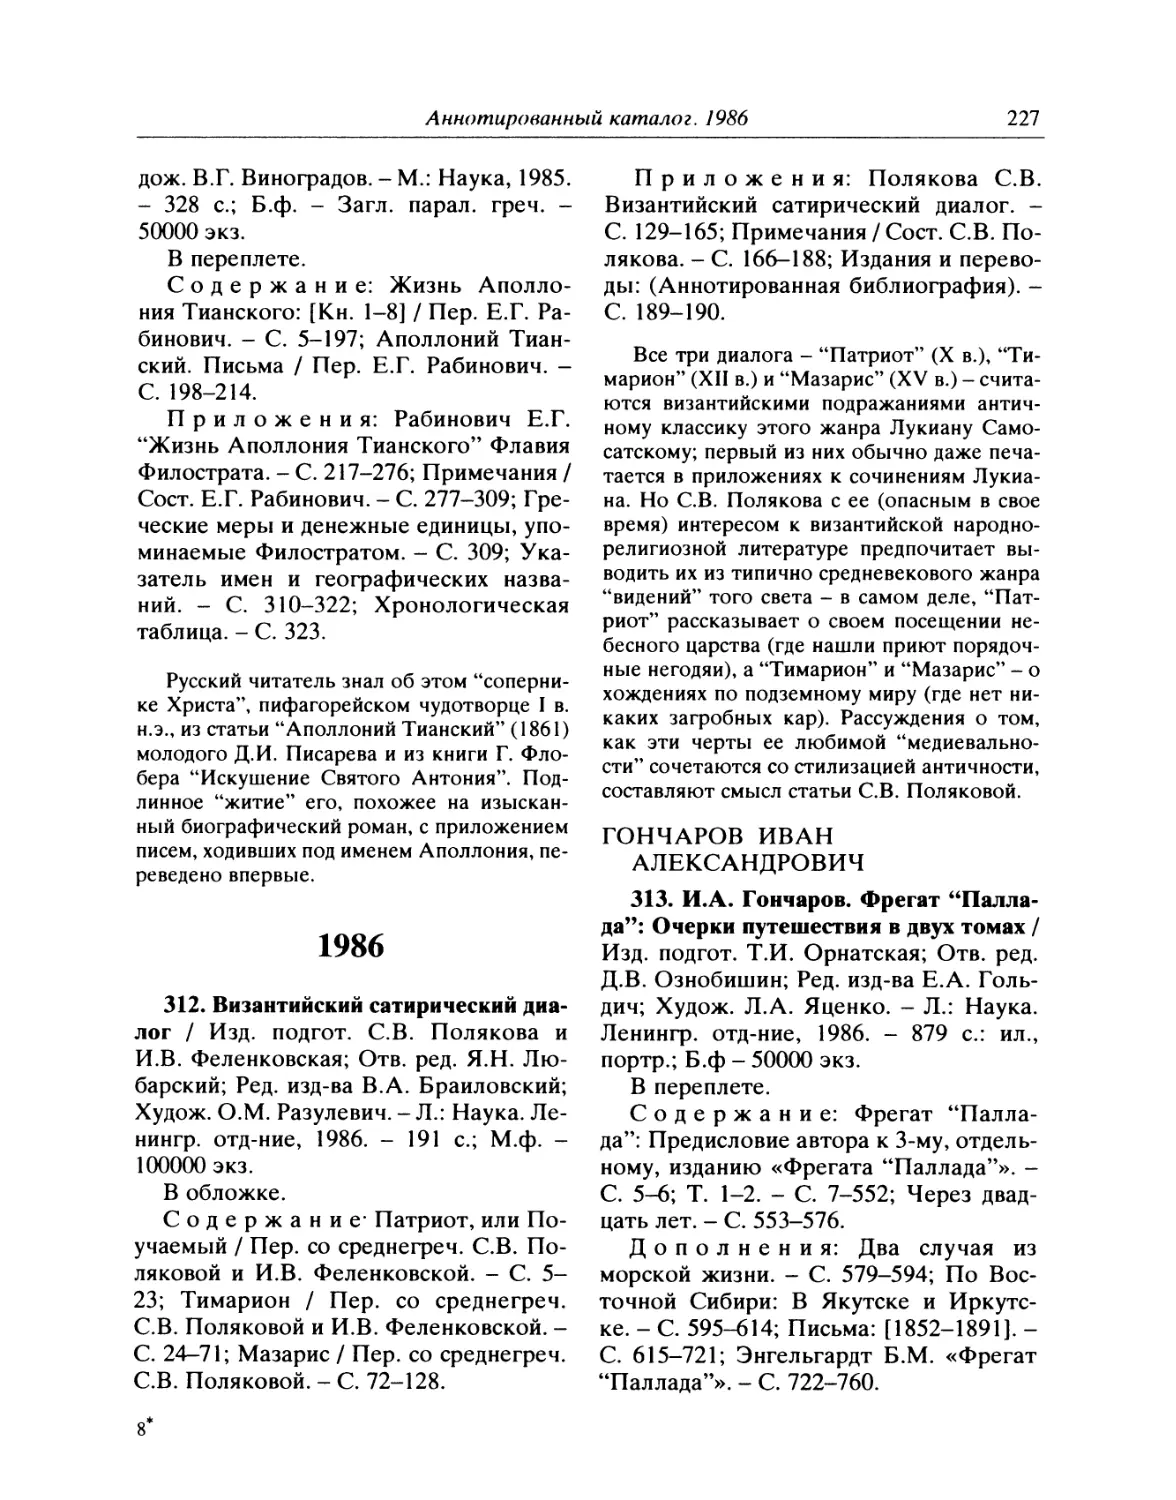 1986
313. И.А. Гончаров. Фрегат «Паллада»: Очерки путешествия в двух томах